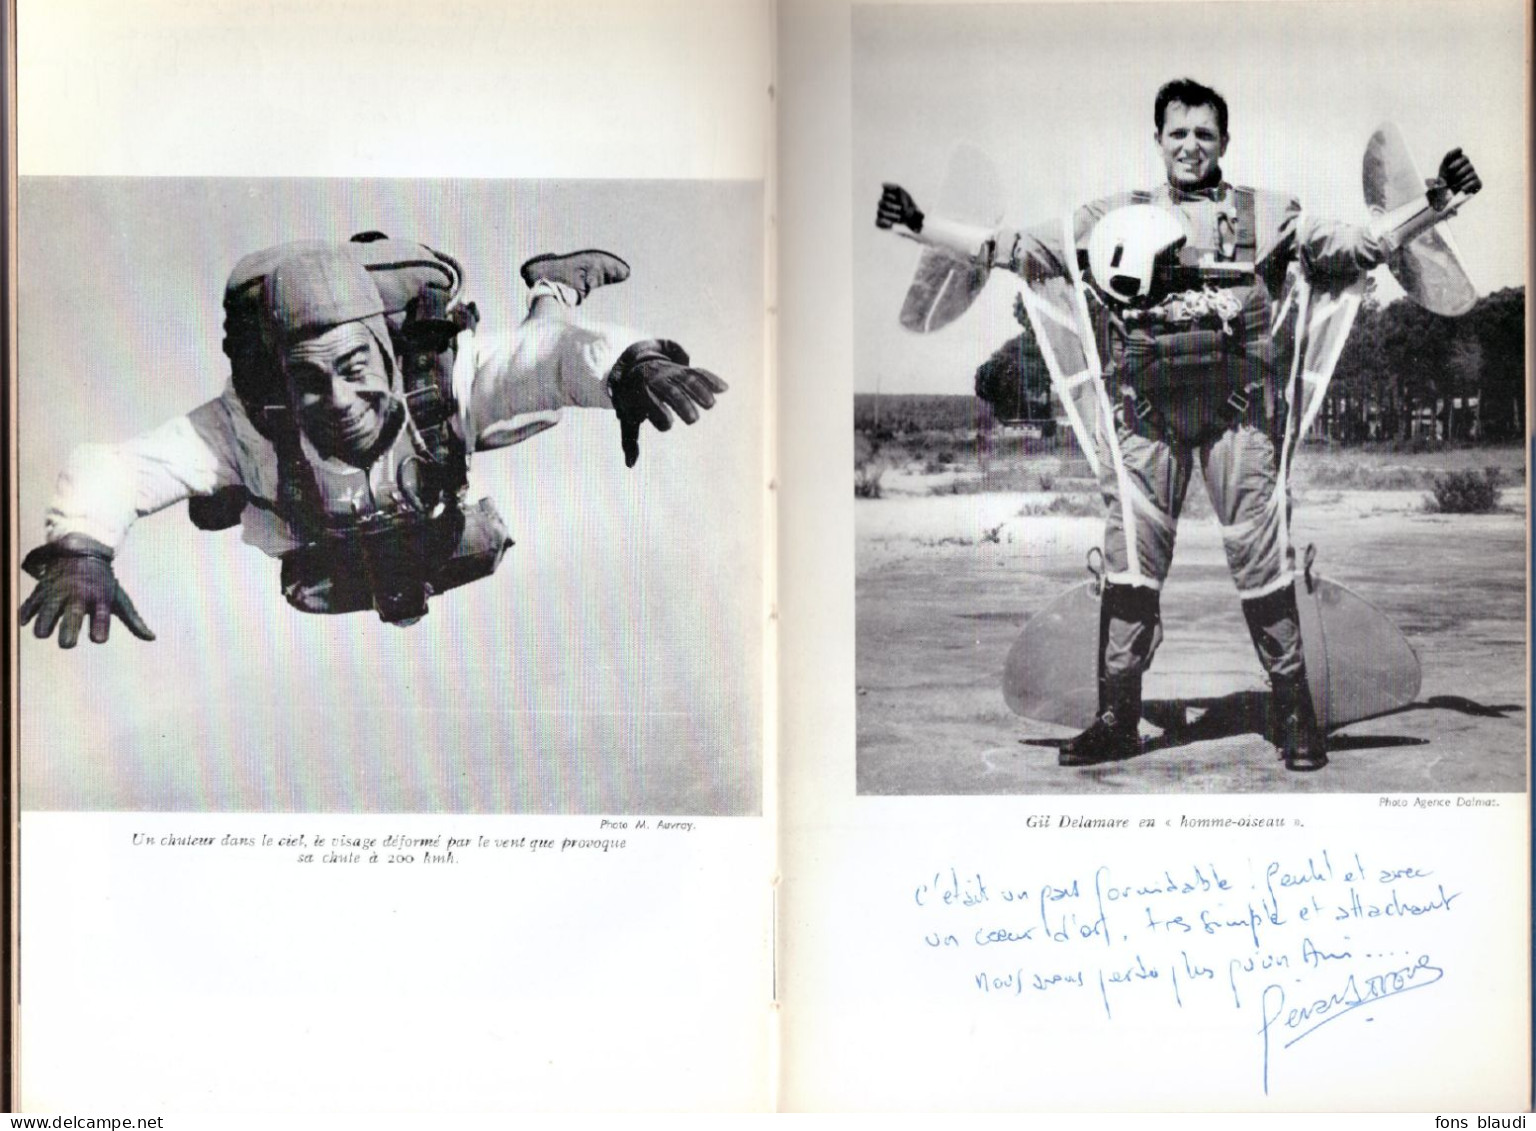 1967 - Marc DEFOURNEAUX - L'attrait Du Vide Le Parachutisme Sportif - Exemplaire Exceptionnel ! - Sport